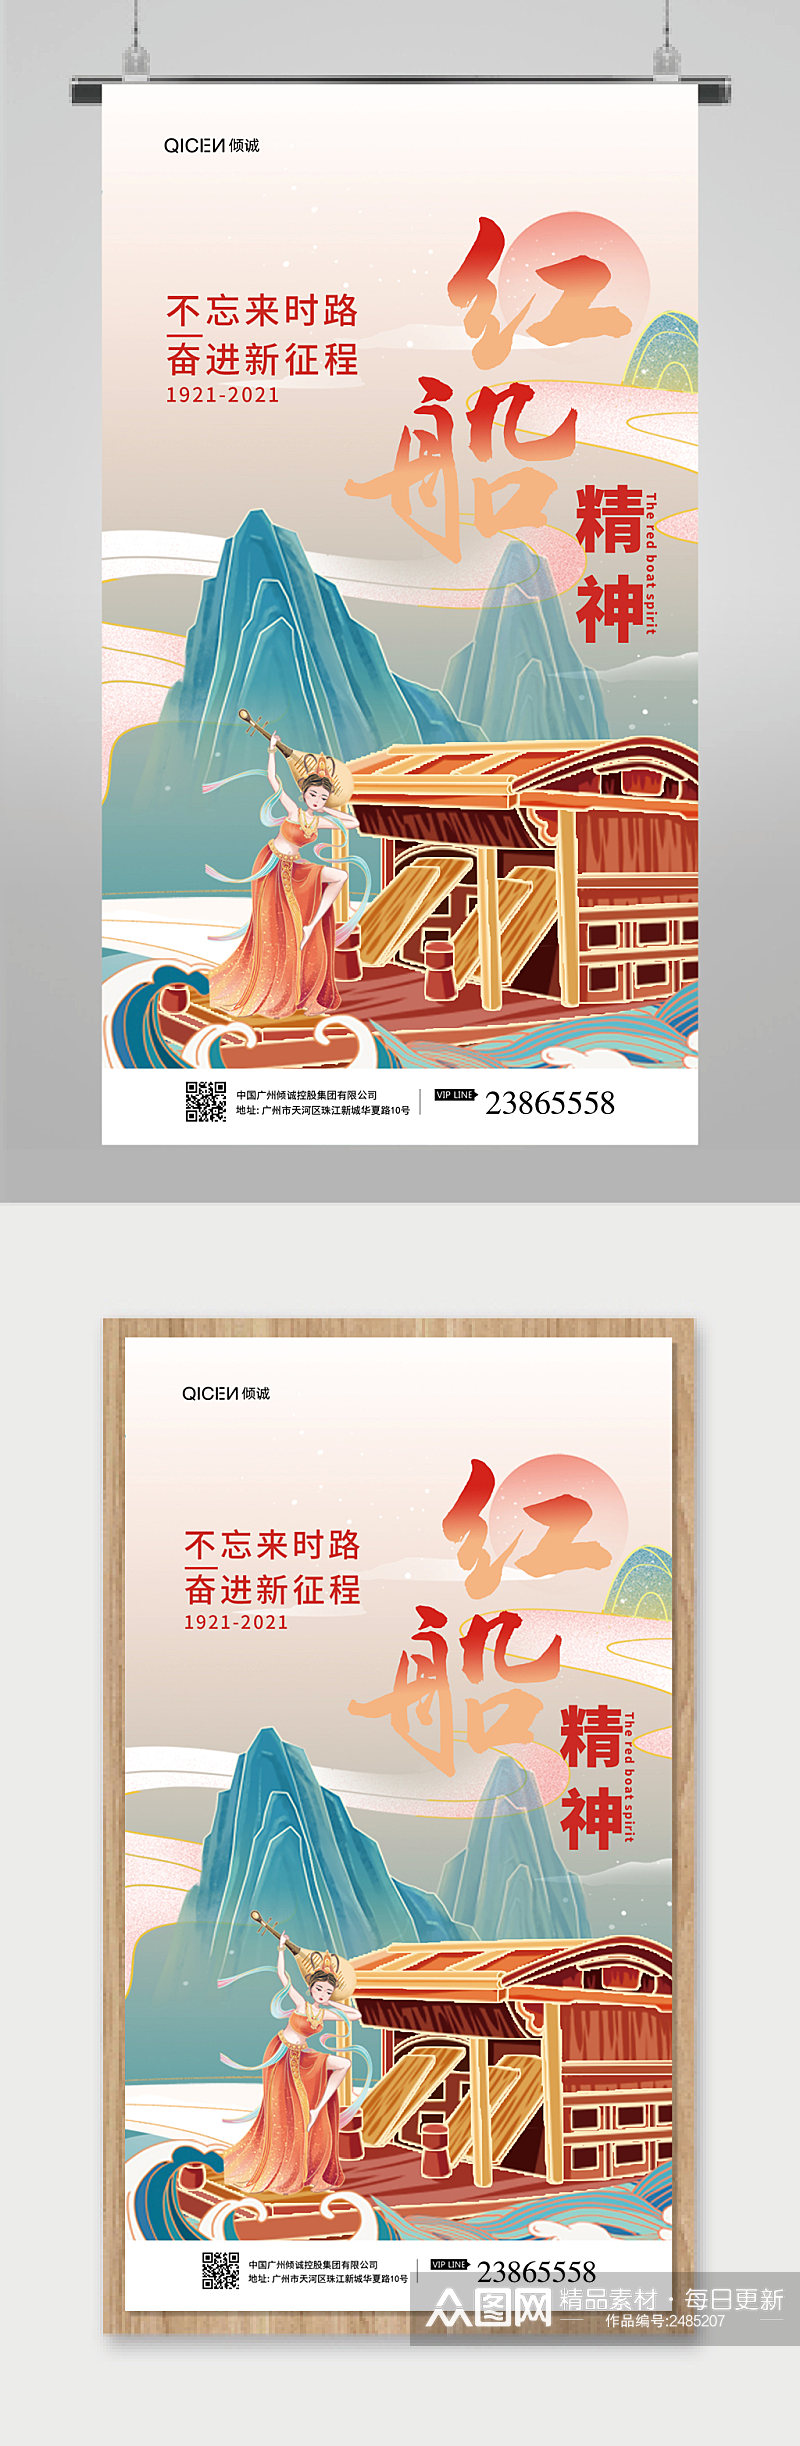 鎏金中国风红船精神党建宣传海报素材